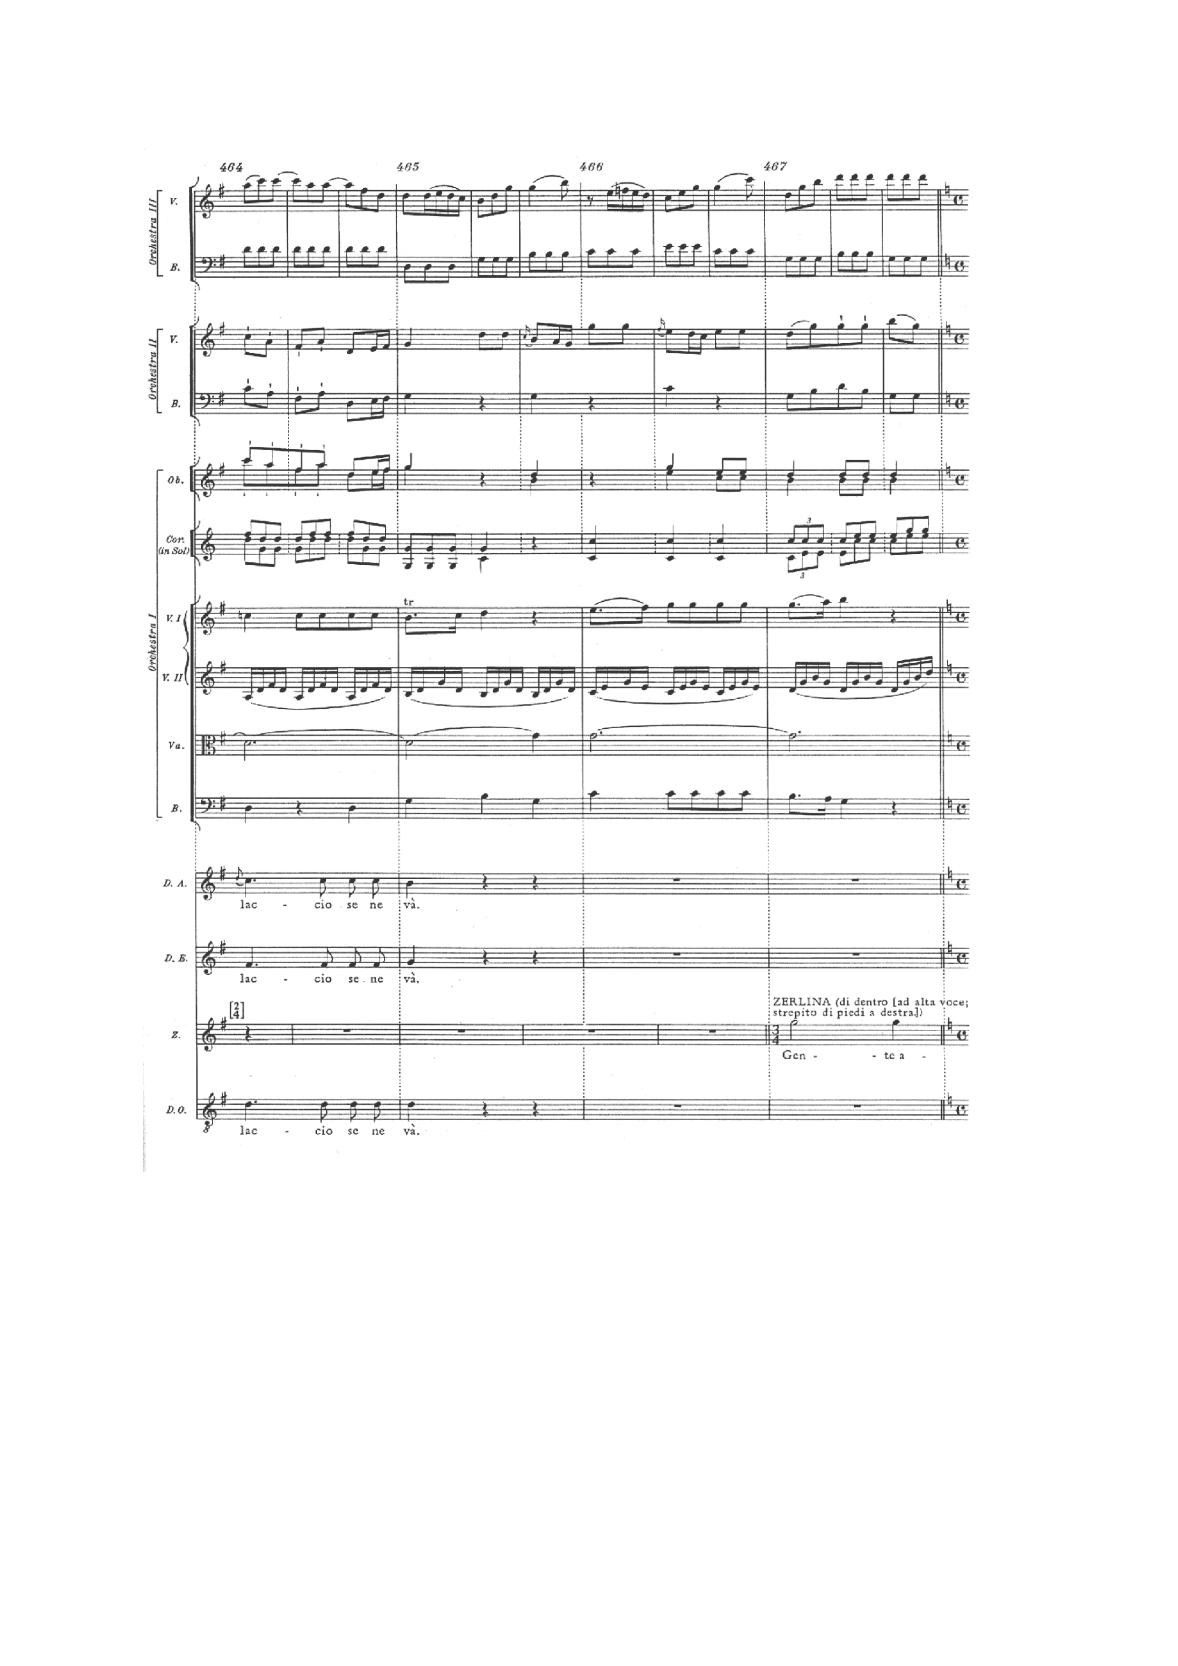 historia-muzyki-przykladowe-nuty-poziom-rozszerzony-matura-2014-str.14